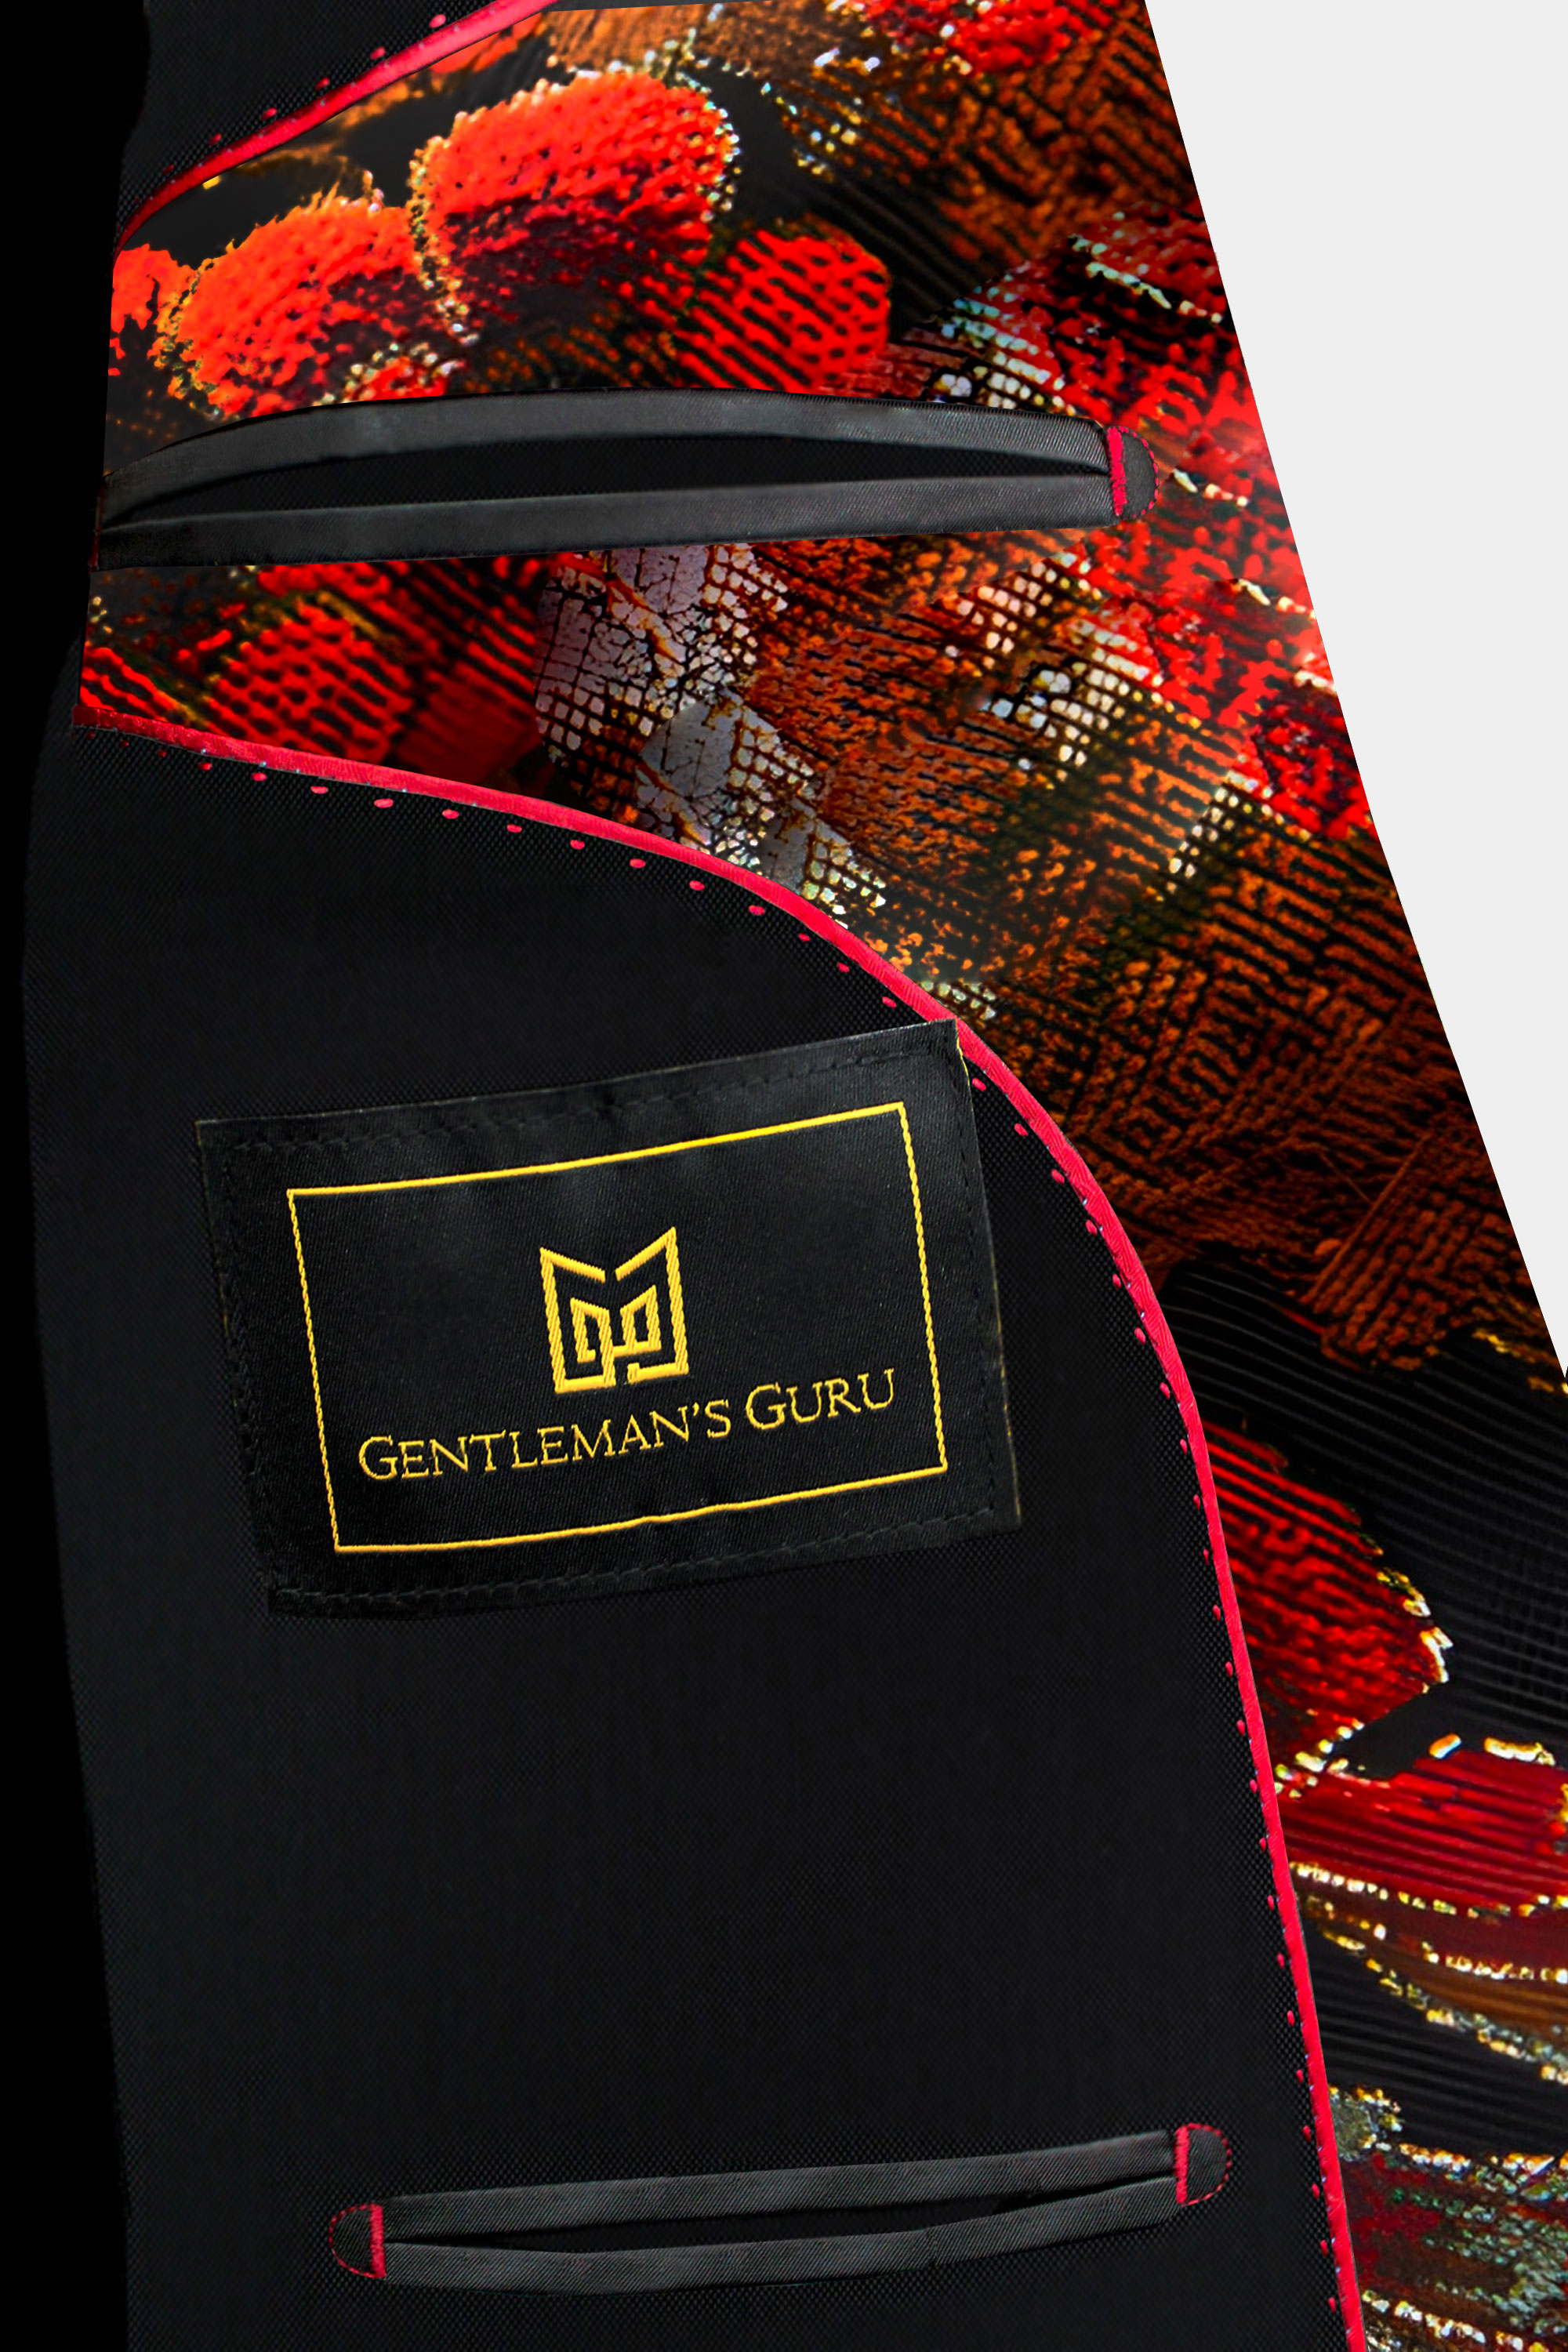 Inside-Black-and-Red-Suit-from-Gentlemansguru.com